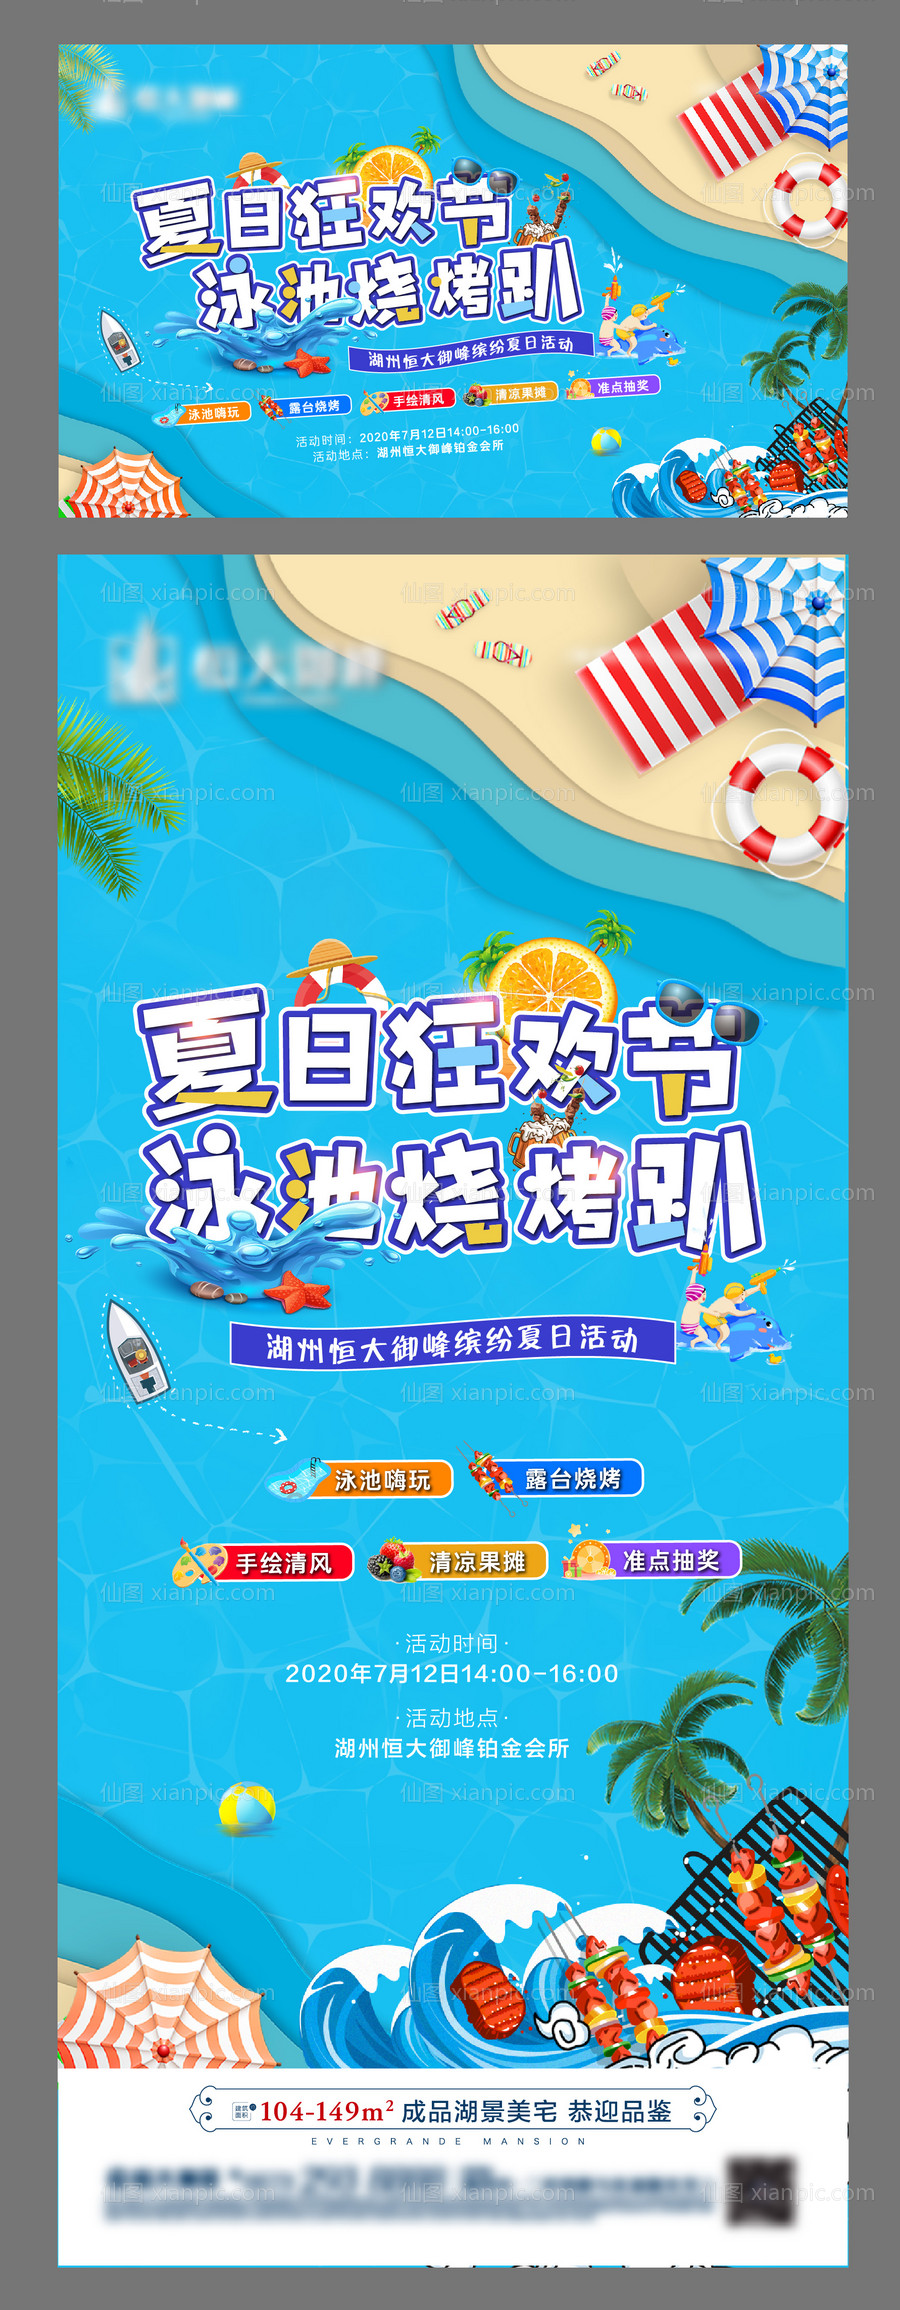 素材乐-泳池烧烤活动海报